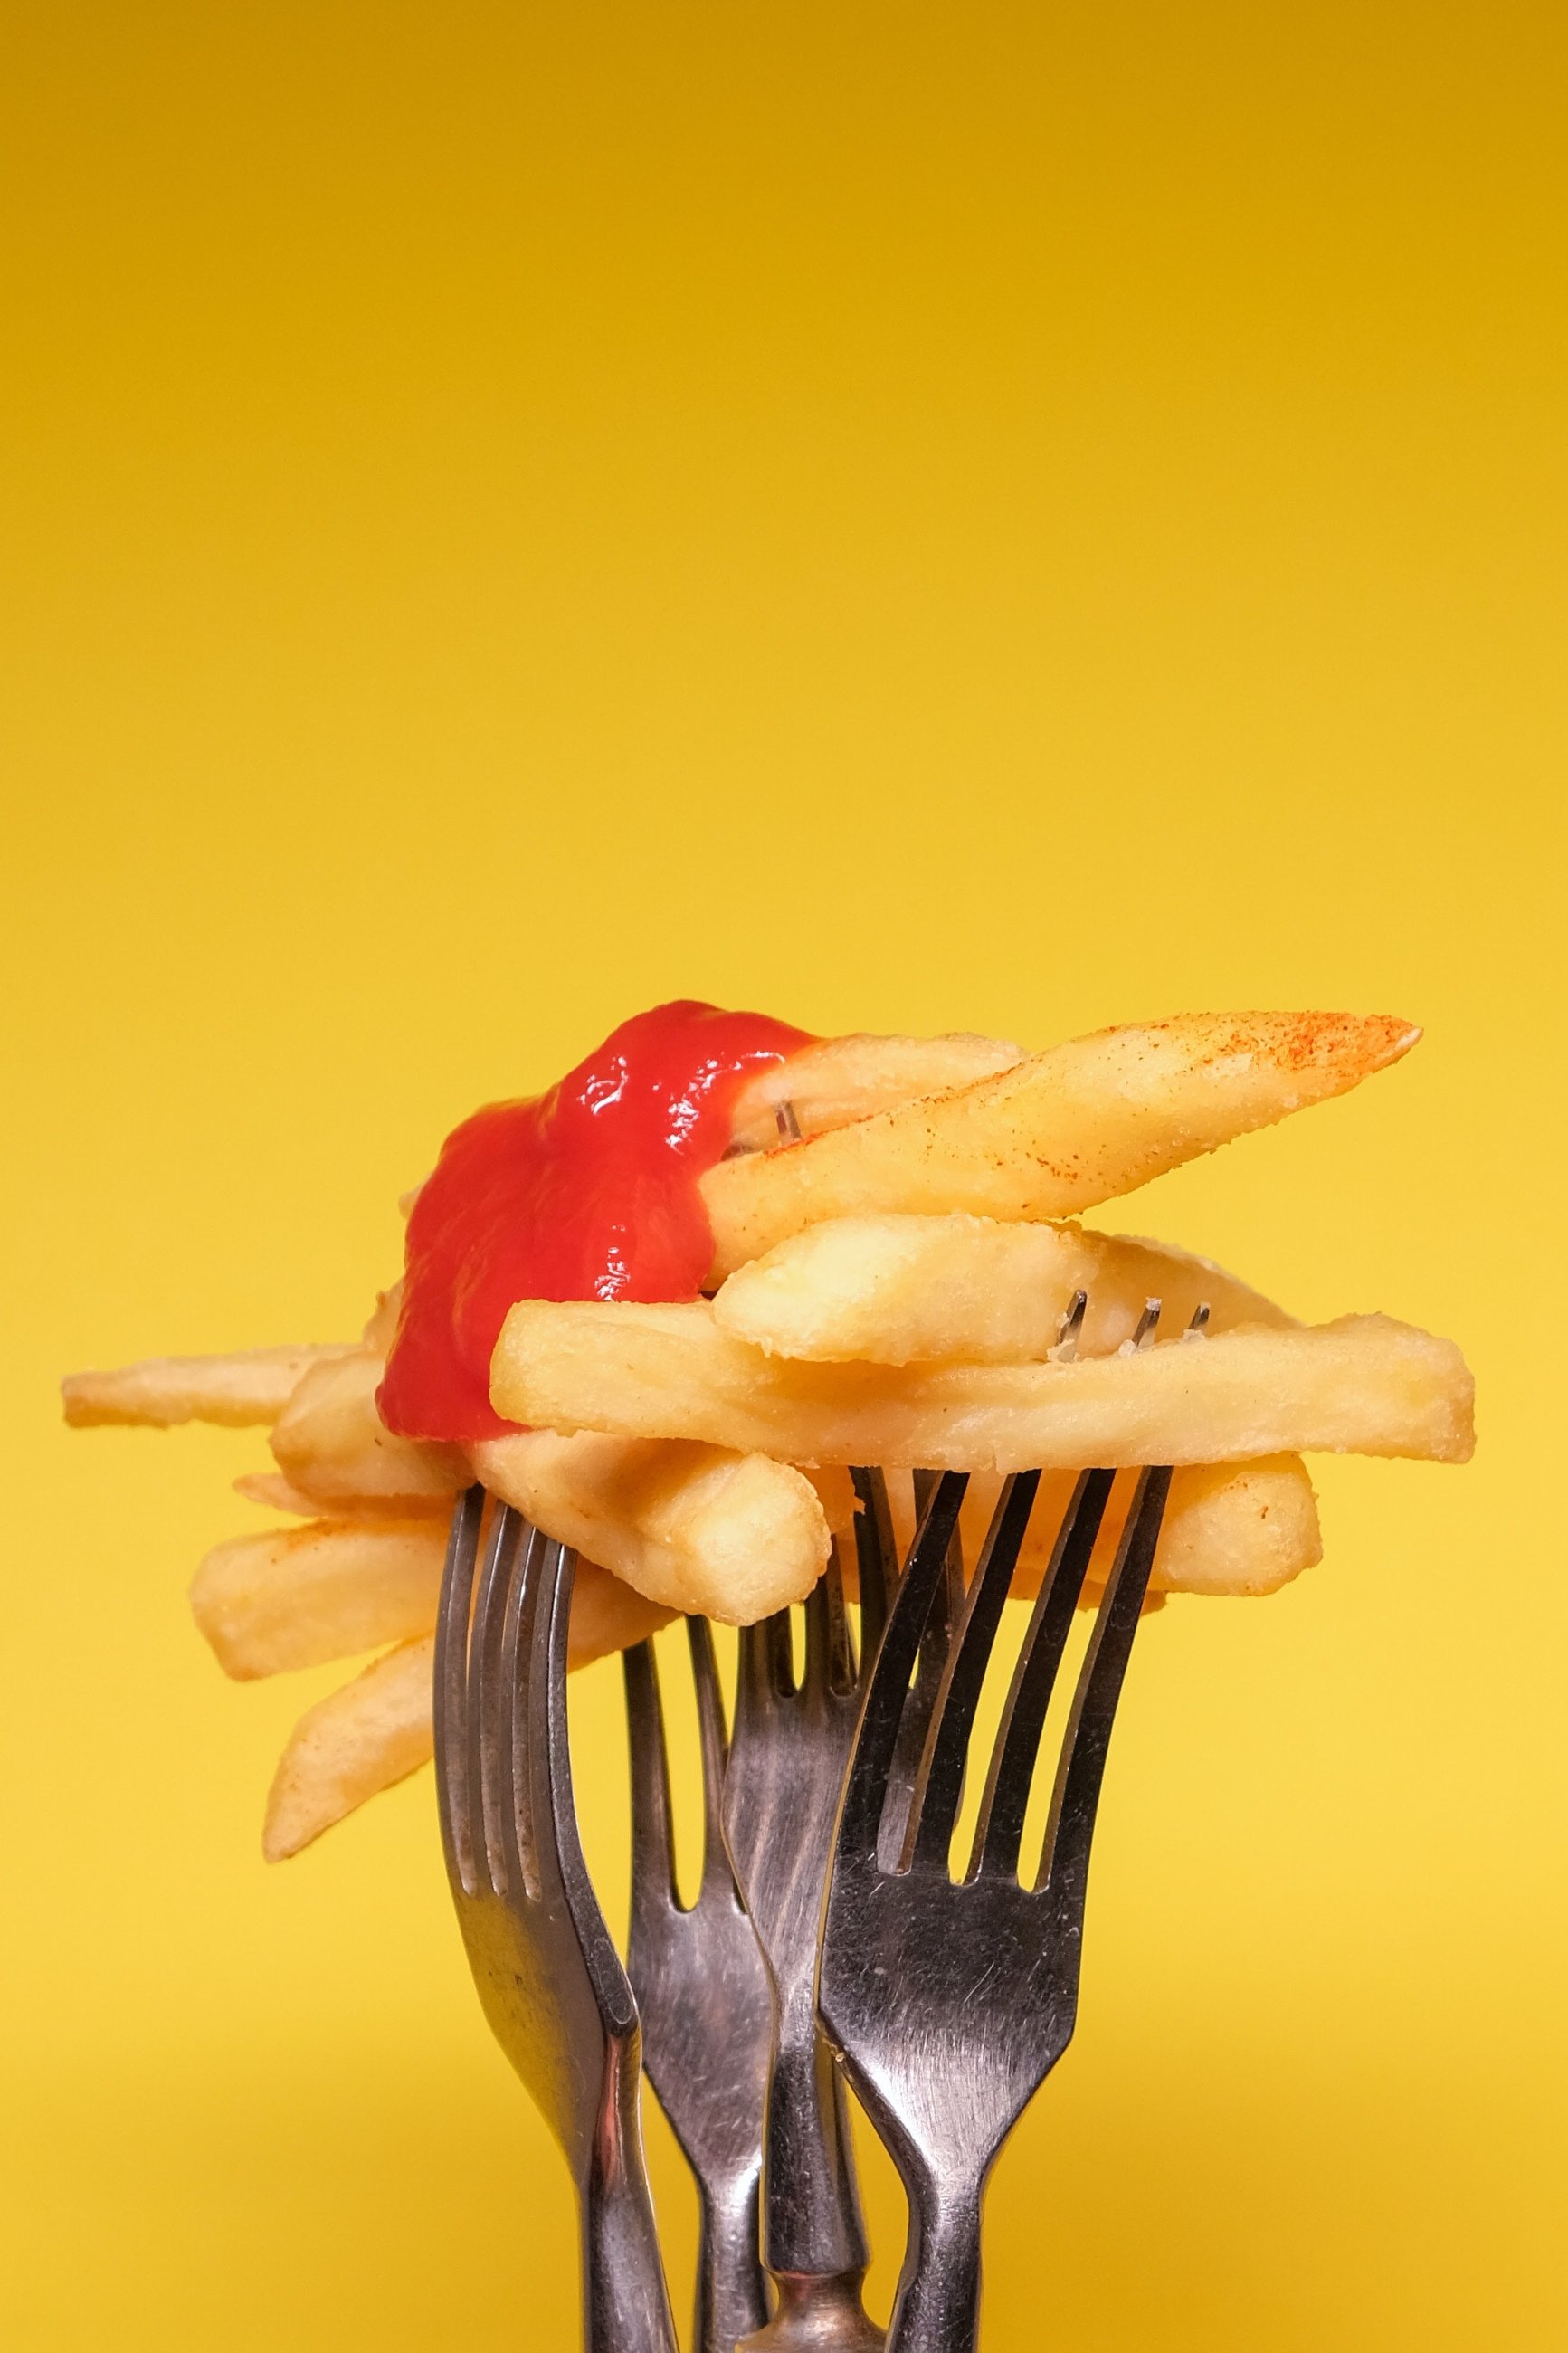 kaloryczny posiłek, frytki z ketchupem na widelcu